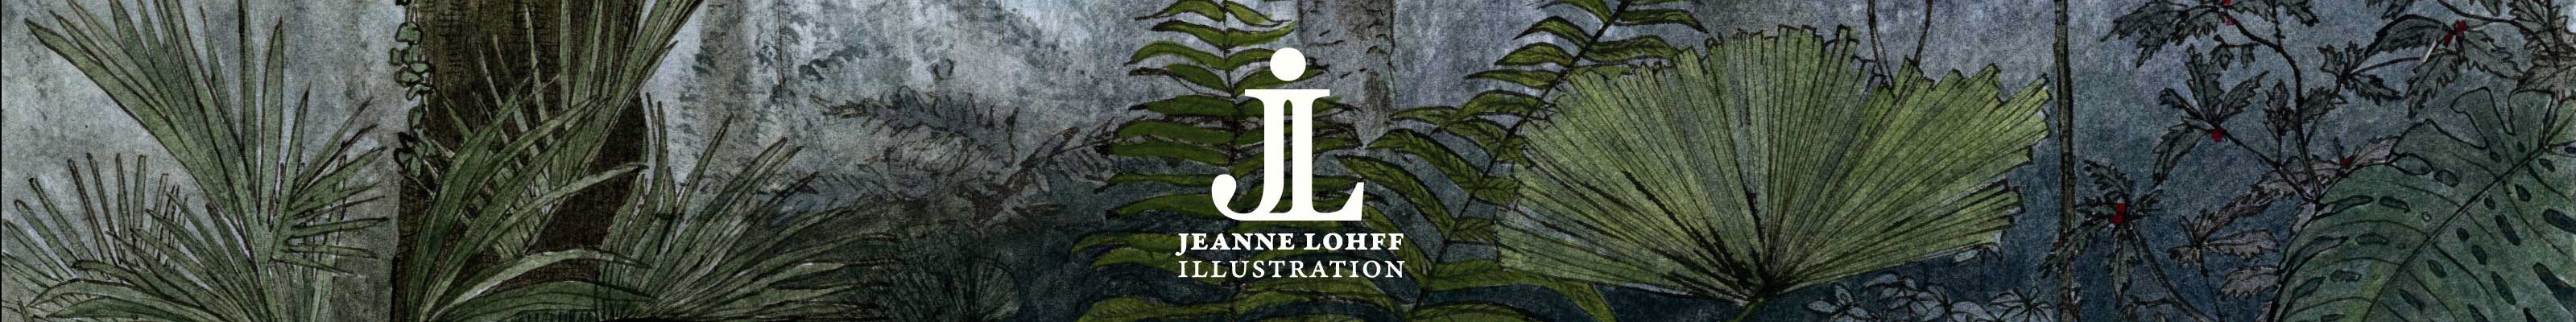 Jeanne Lohff's profile banner